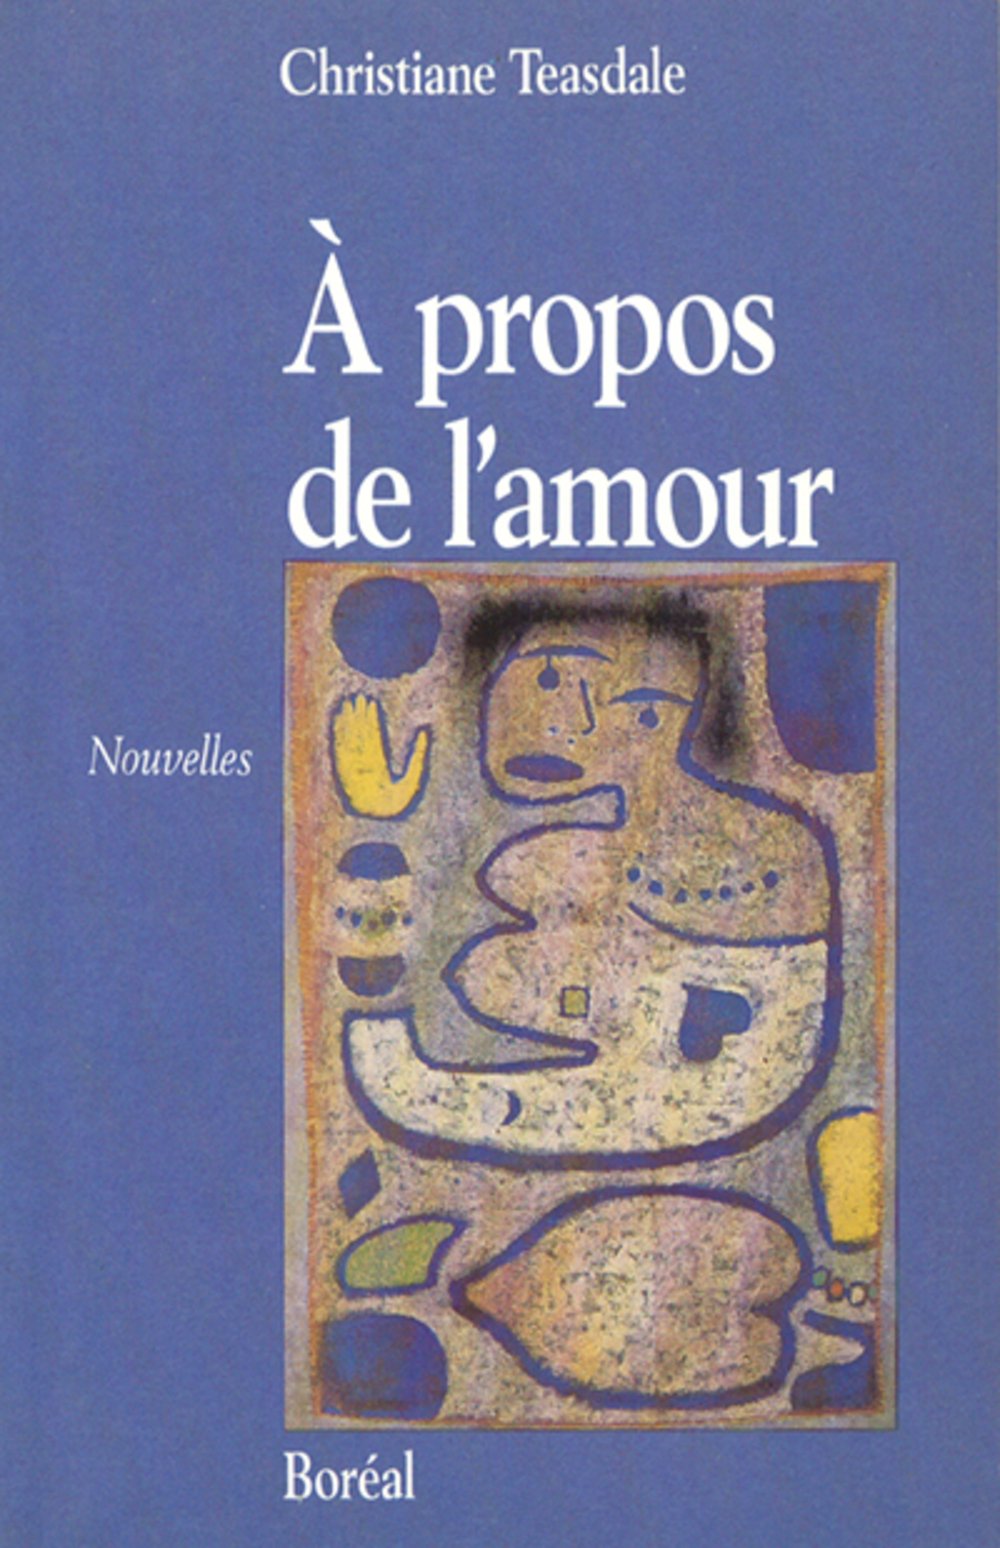 Livre ISBN 2890523217 À propos de l'amour (Christiane Teasdale)